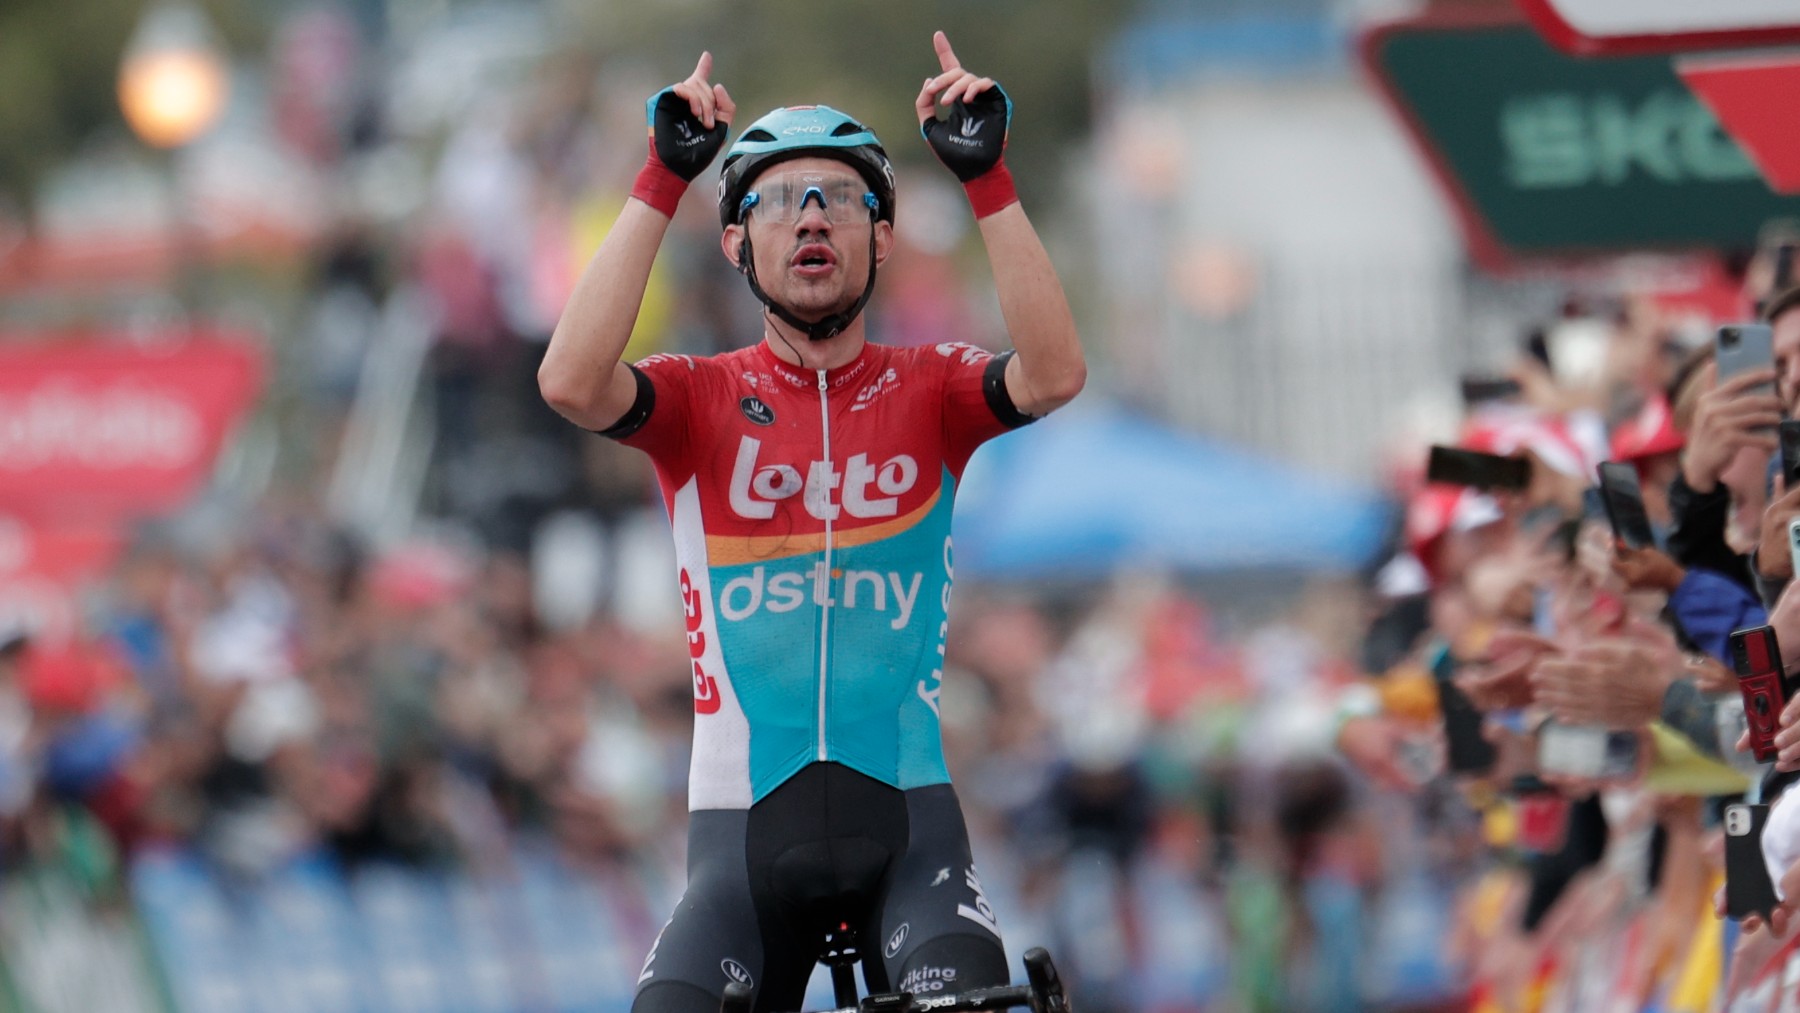 Kron celebra su victoria en la etapa 2 de la Vuelta. (EFE)